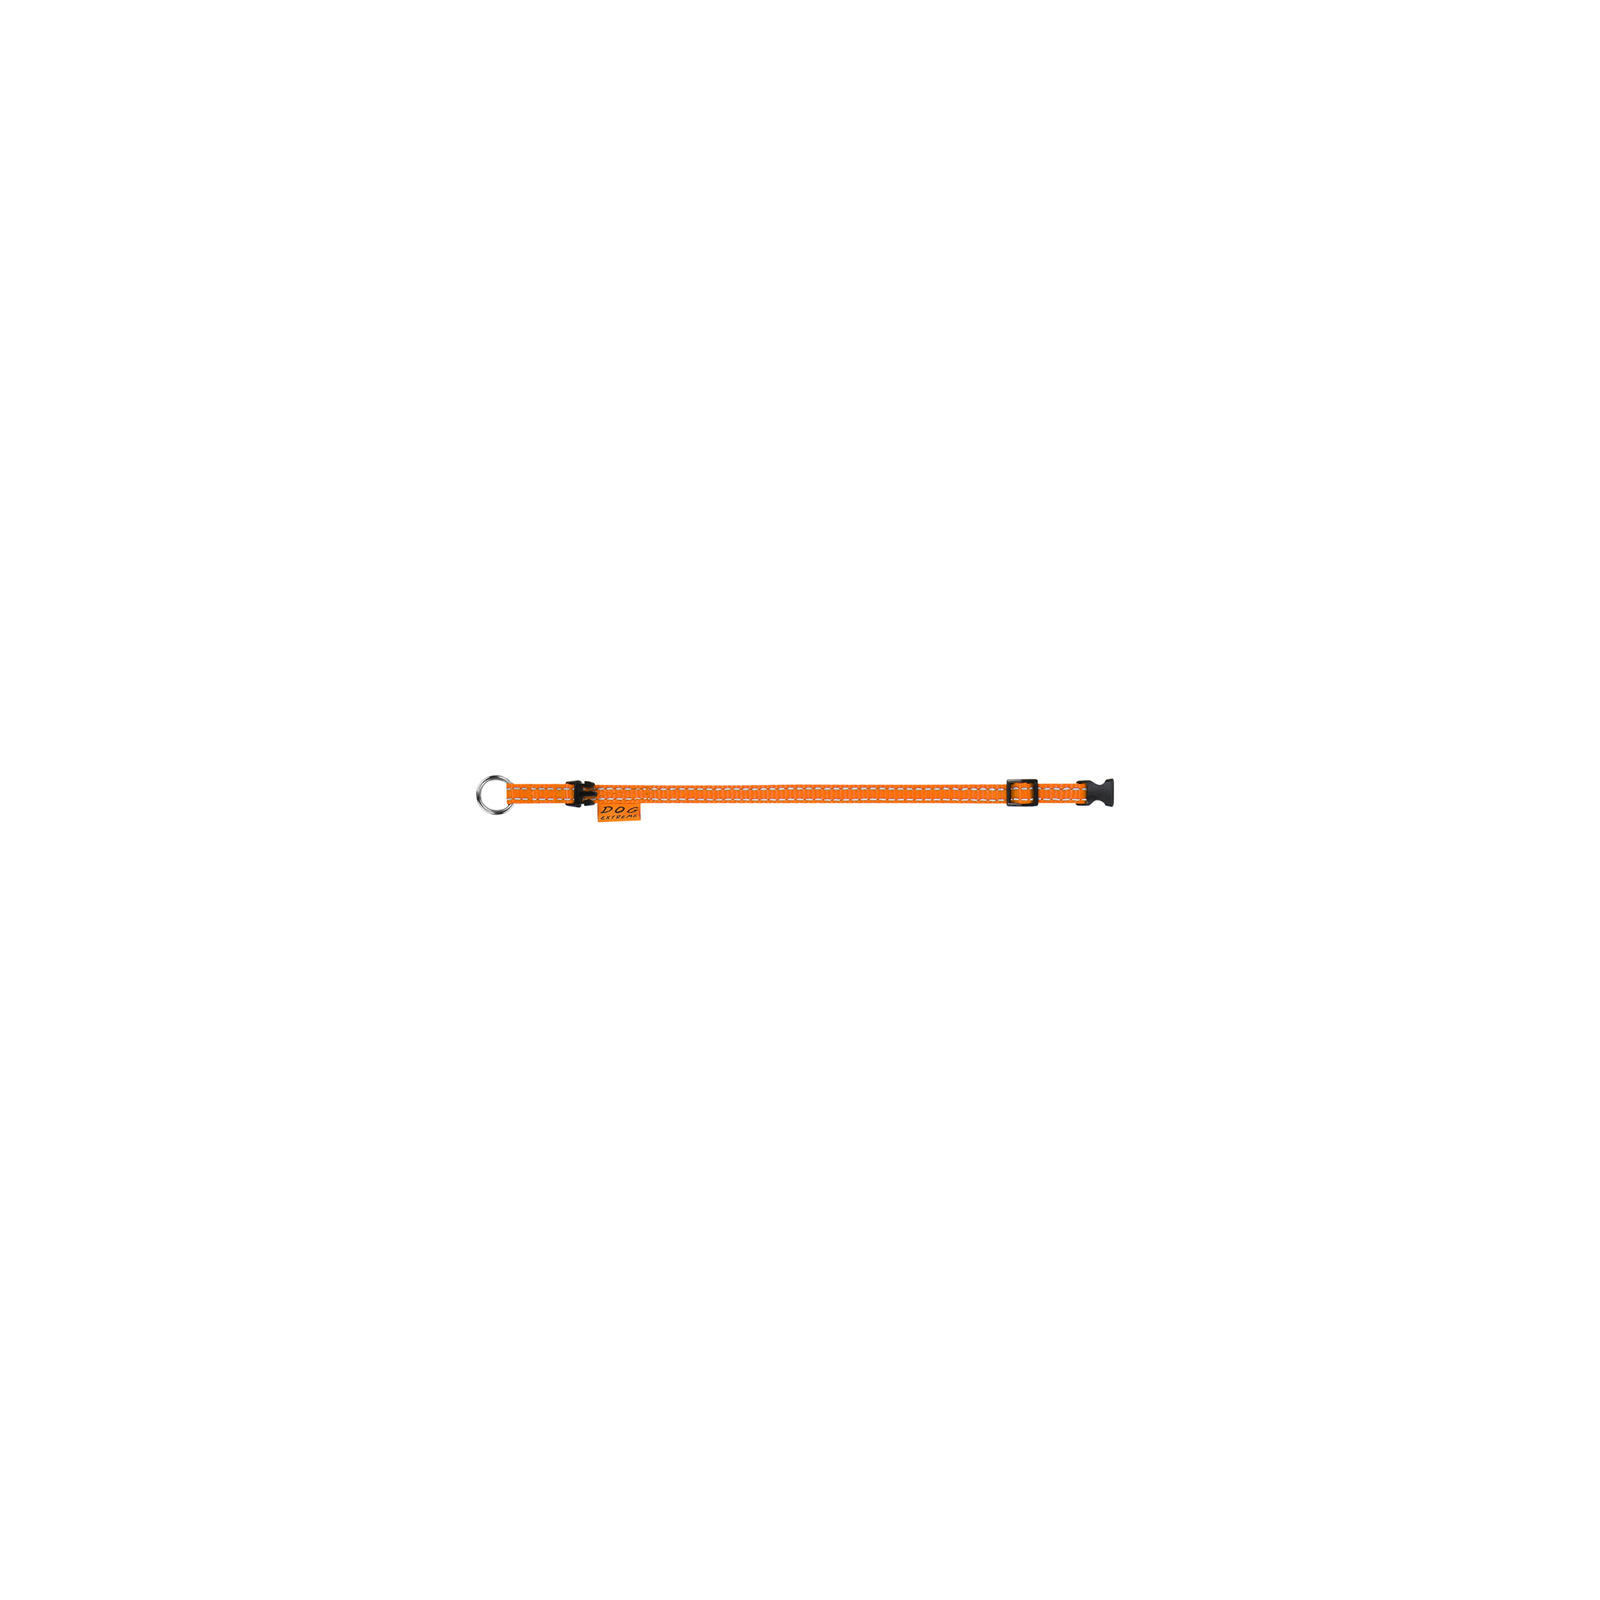 Ошейник для животных Dog Extreme из нейлона регулируемый Ш 10 мм Д 20-30 см оранжевый (42844) изображение 3